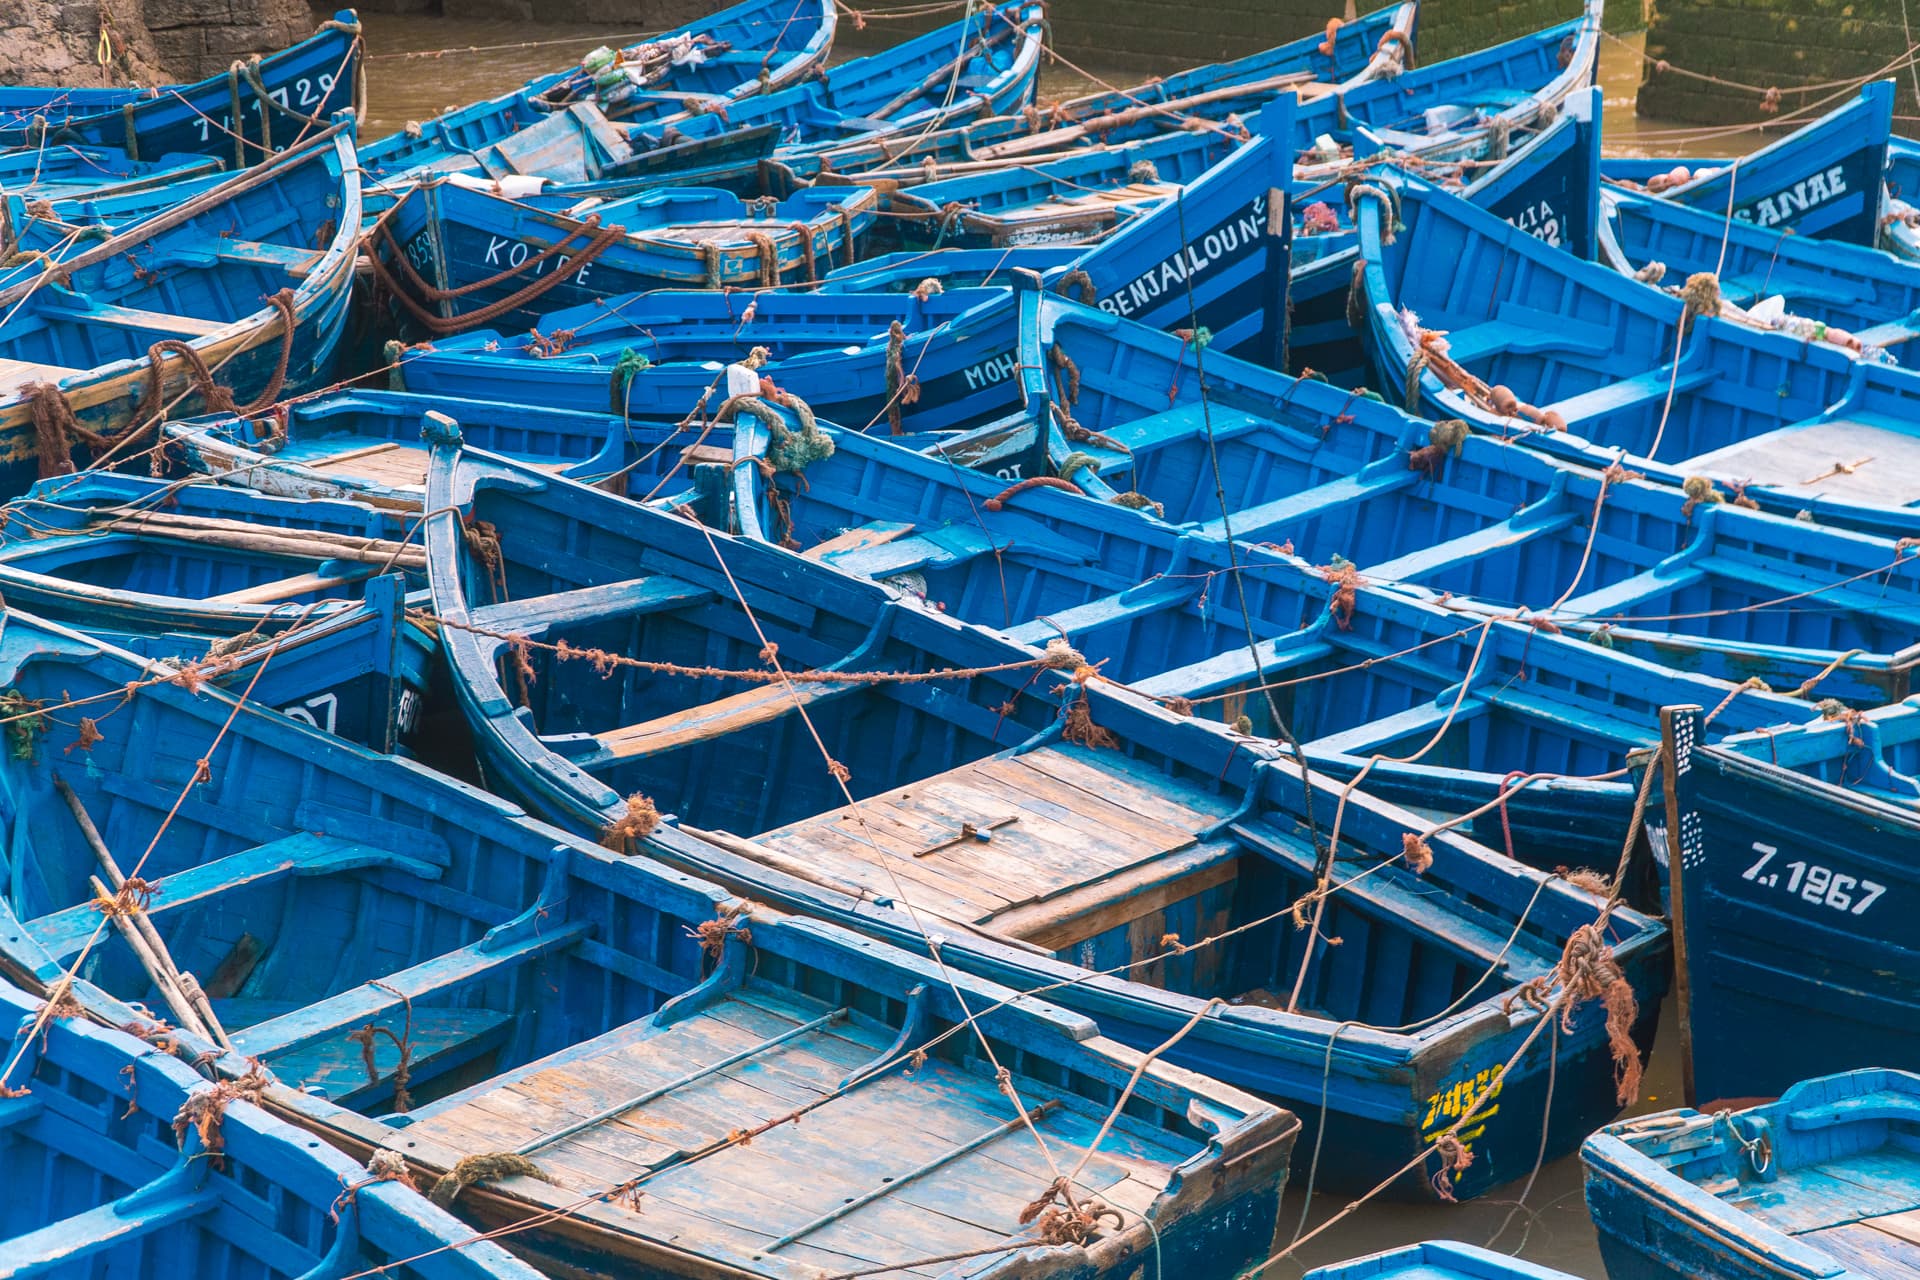 Niebieskie łódki w Essaouirze | Plan wyjazdu do Maroko